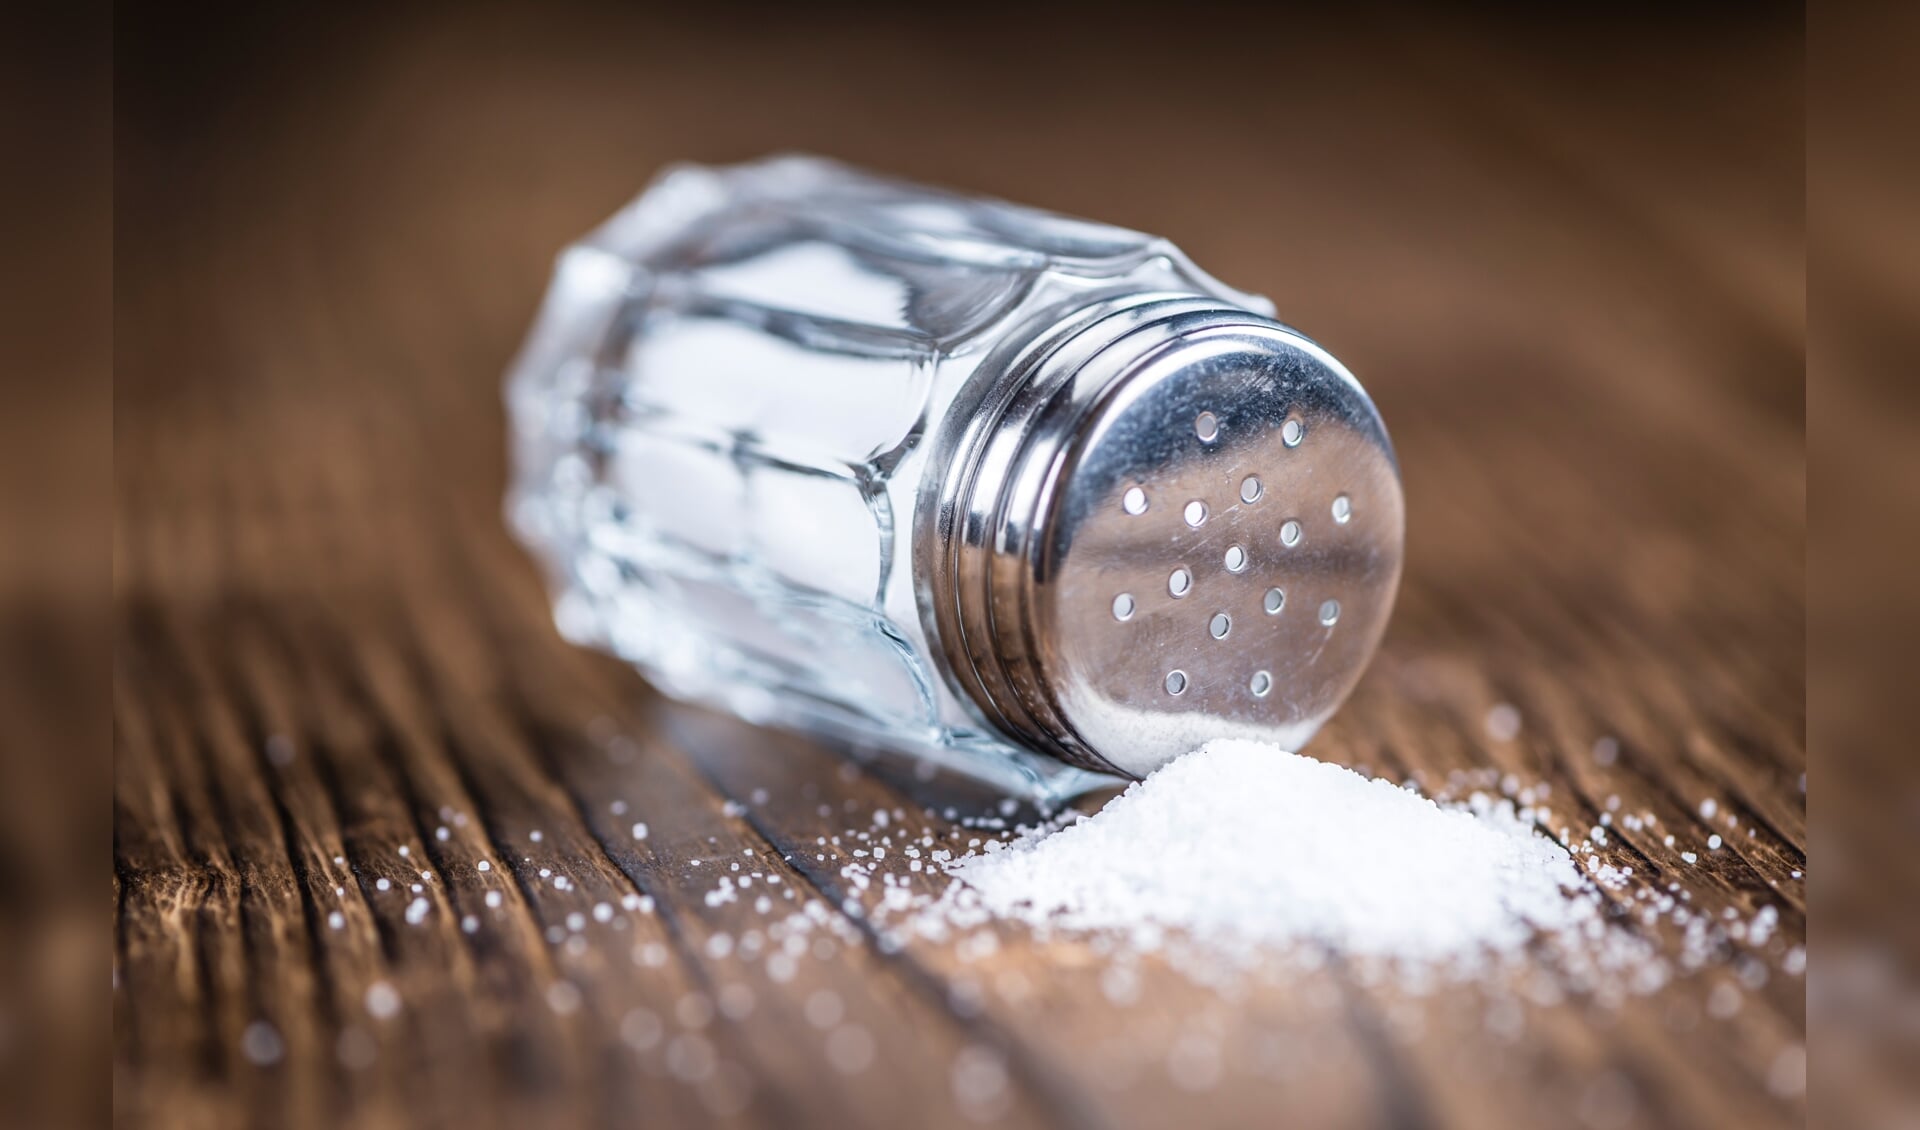 We eten gemiddeld ruim een kilo zout te veel per jaar. Dit is nadelig voor de gezondheid. De Nierstichting promoot daarom zoutarm en zoutbewust eten.